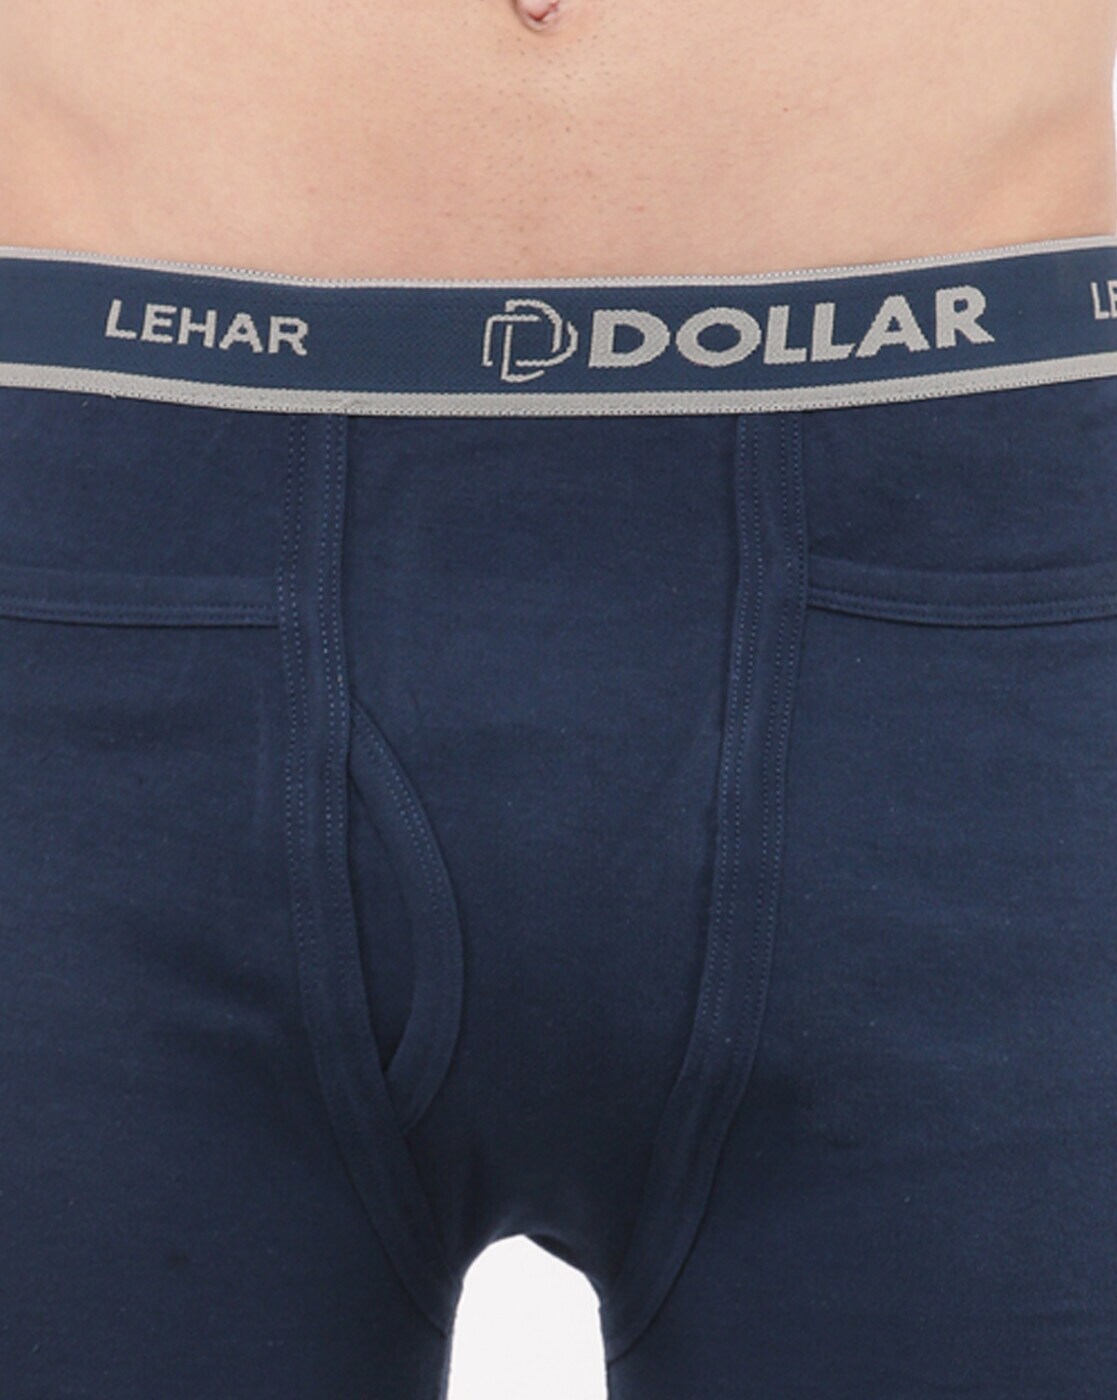 Buy Multi Trunks for Men by DOLLAR LEHAR Online